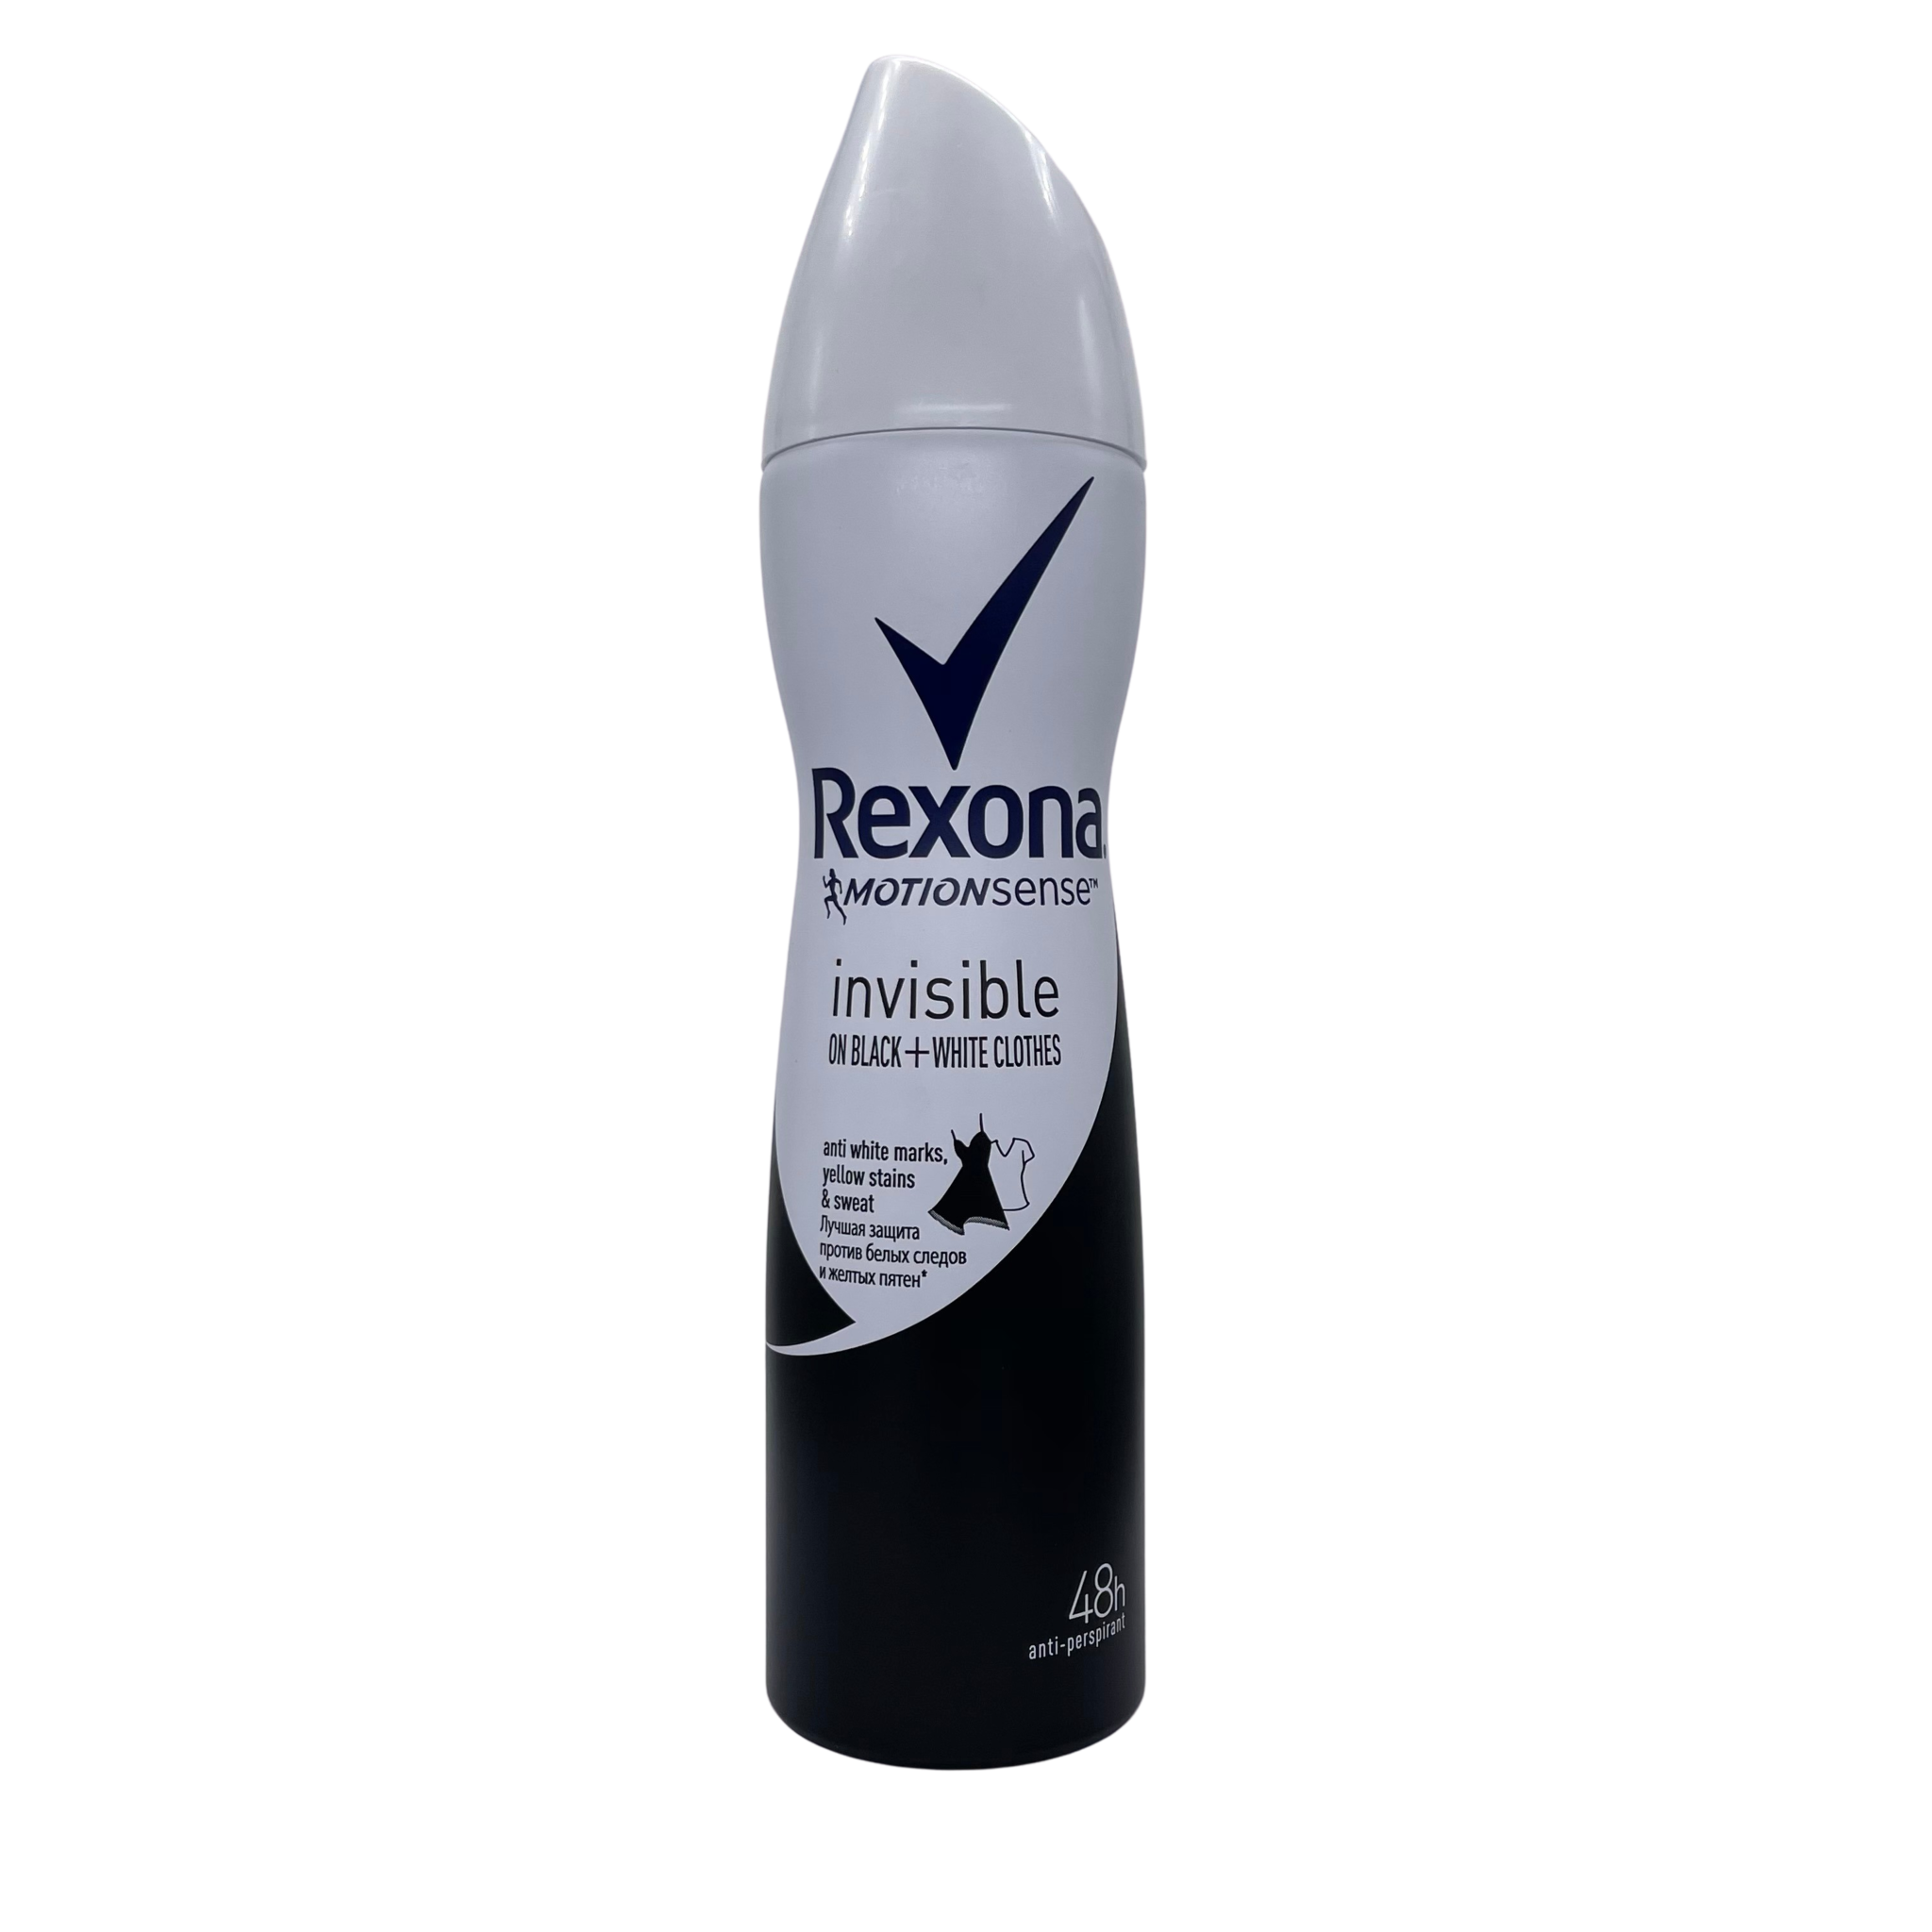 Rexona Invisible on Black & White Clothes deodorant spray 150ml